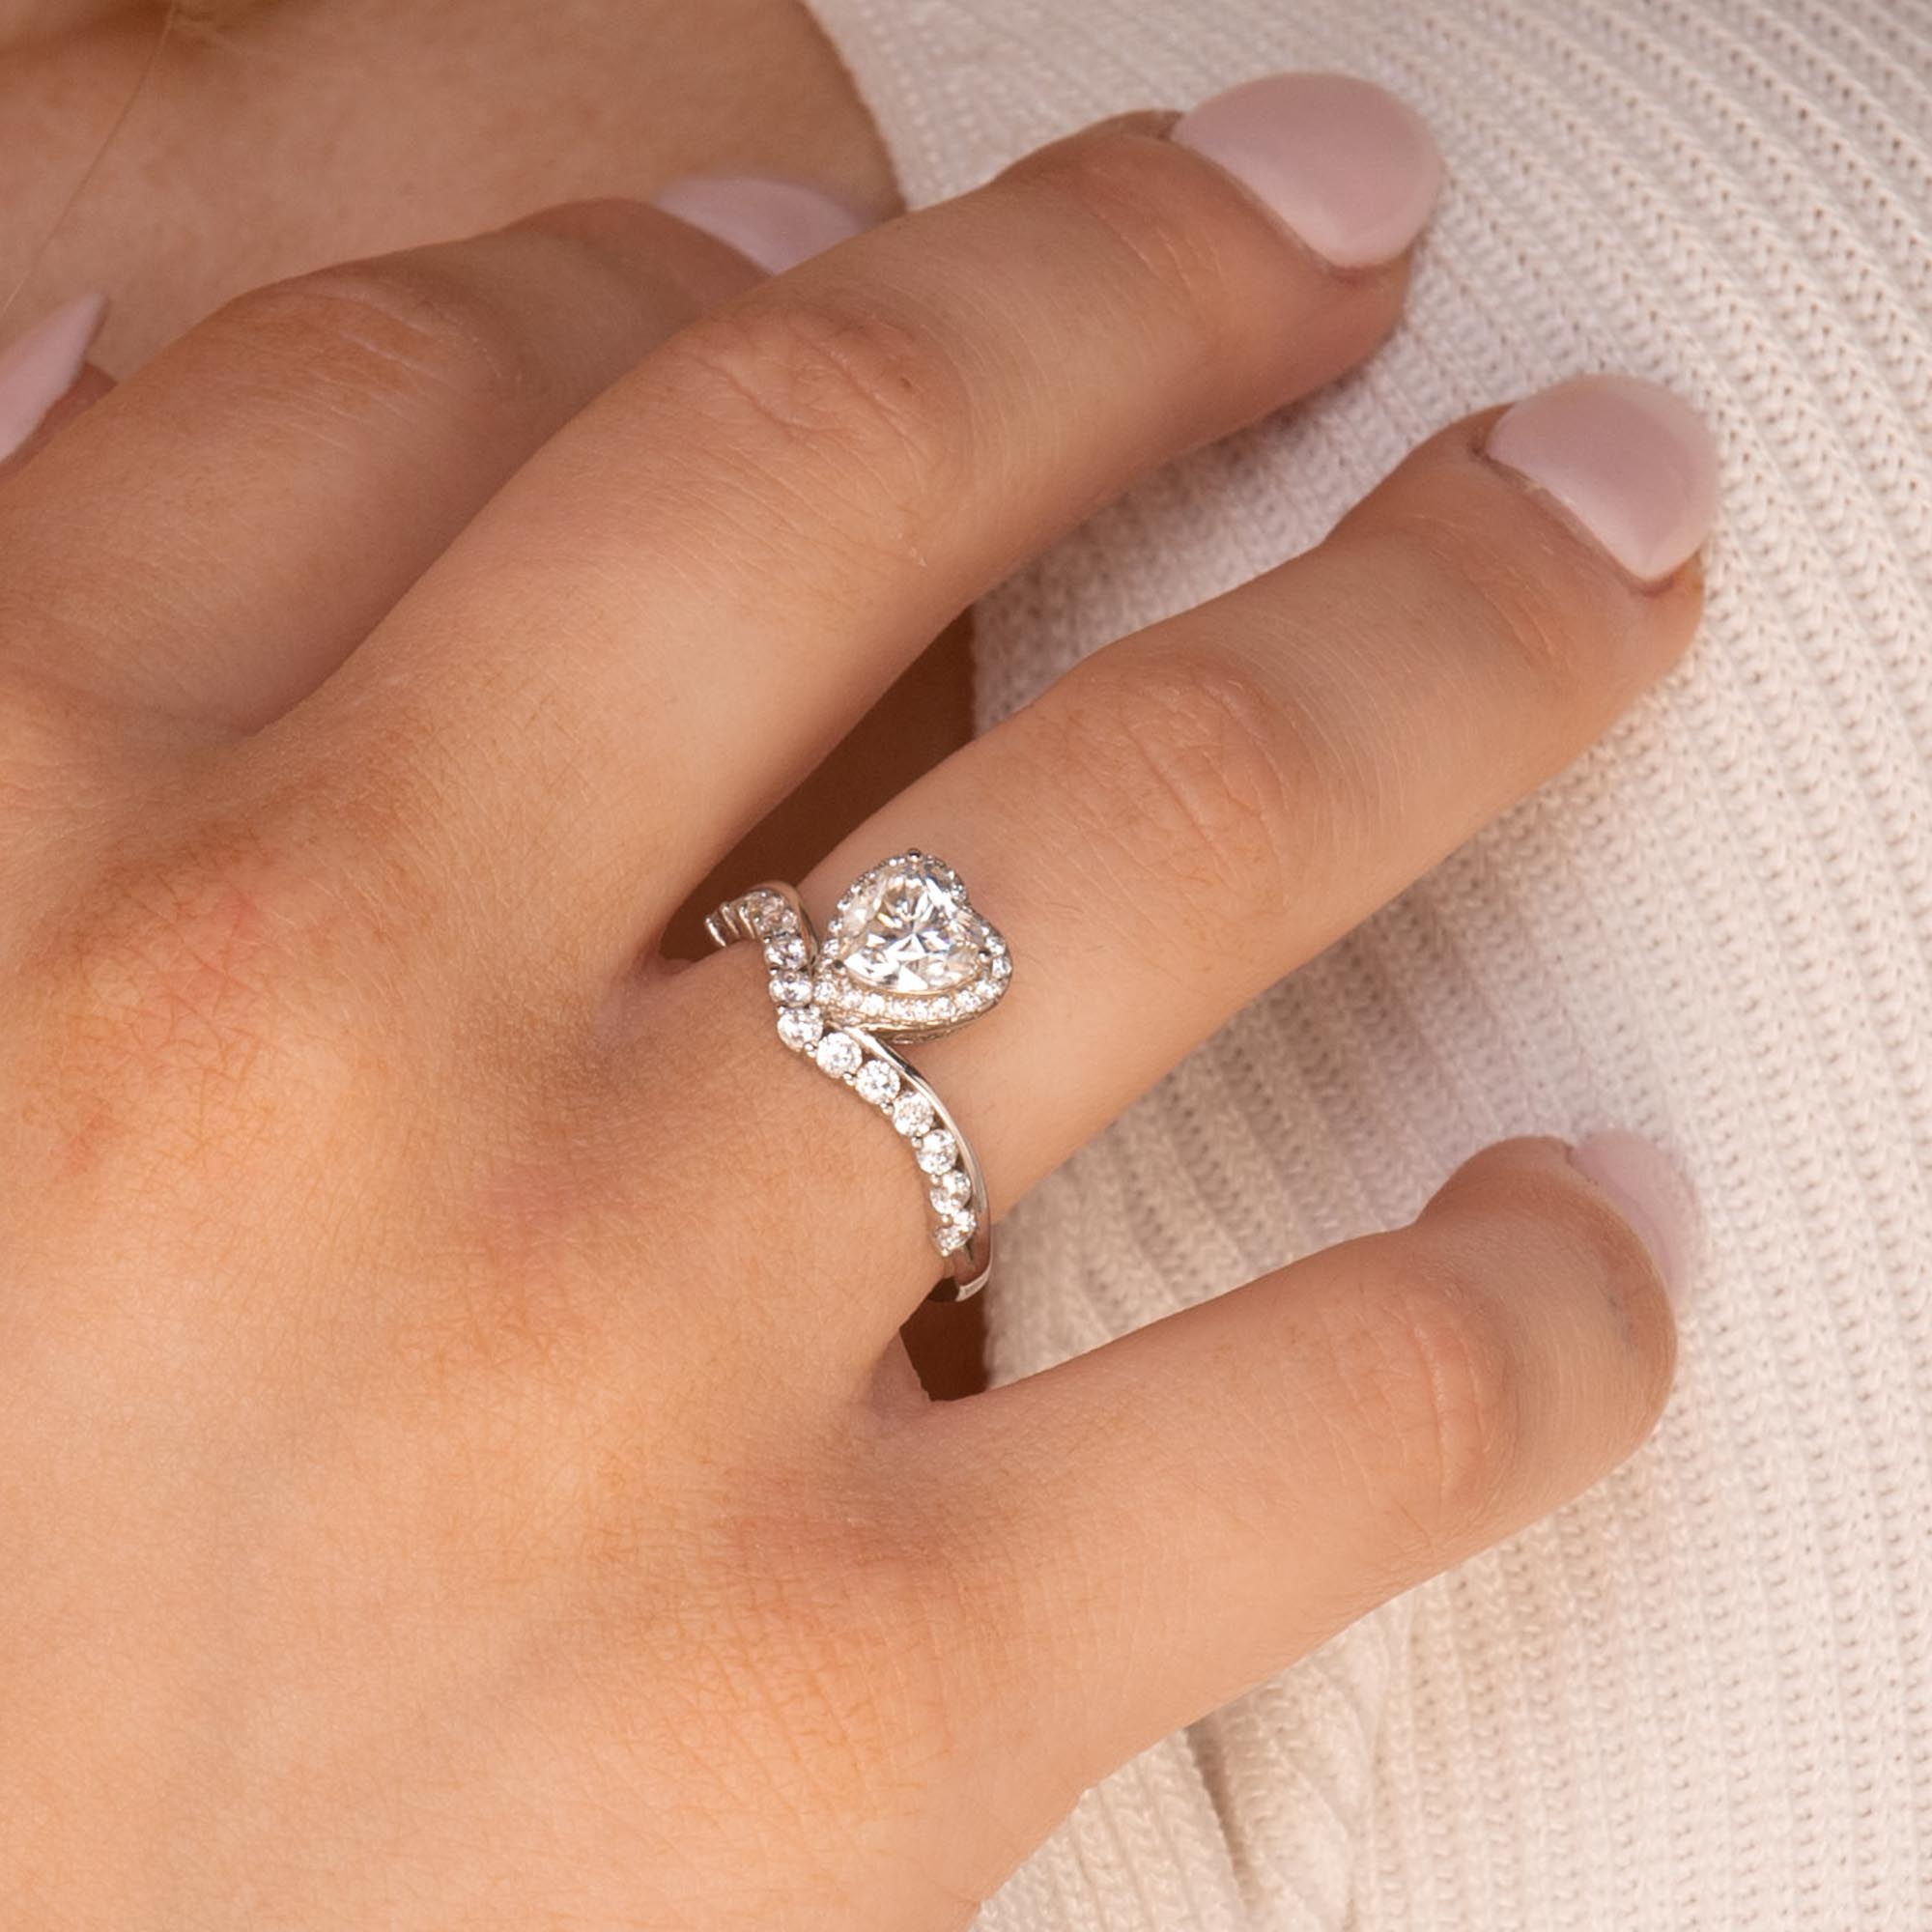 1ct The Eternal Love Moissanite Diamond Engagement Ring